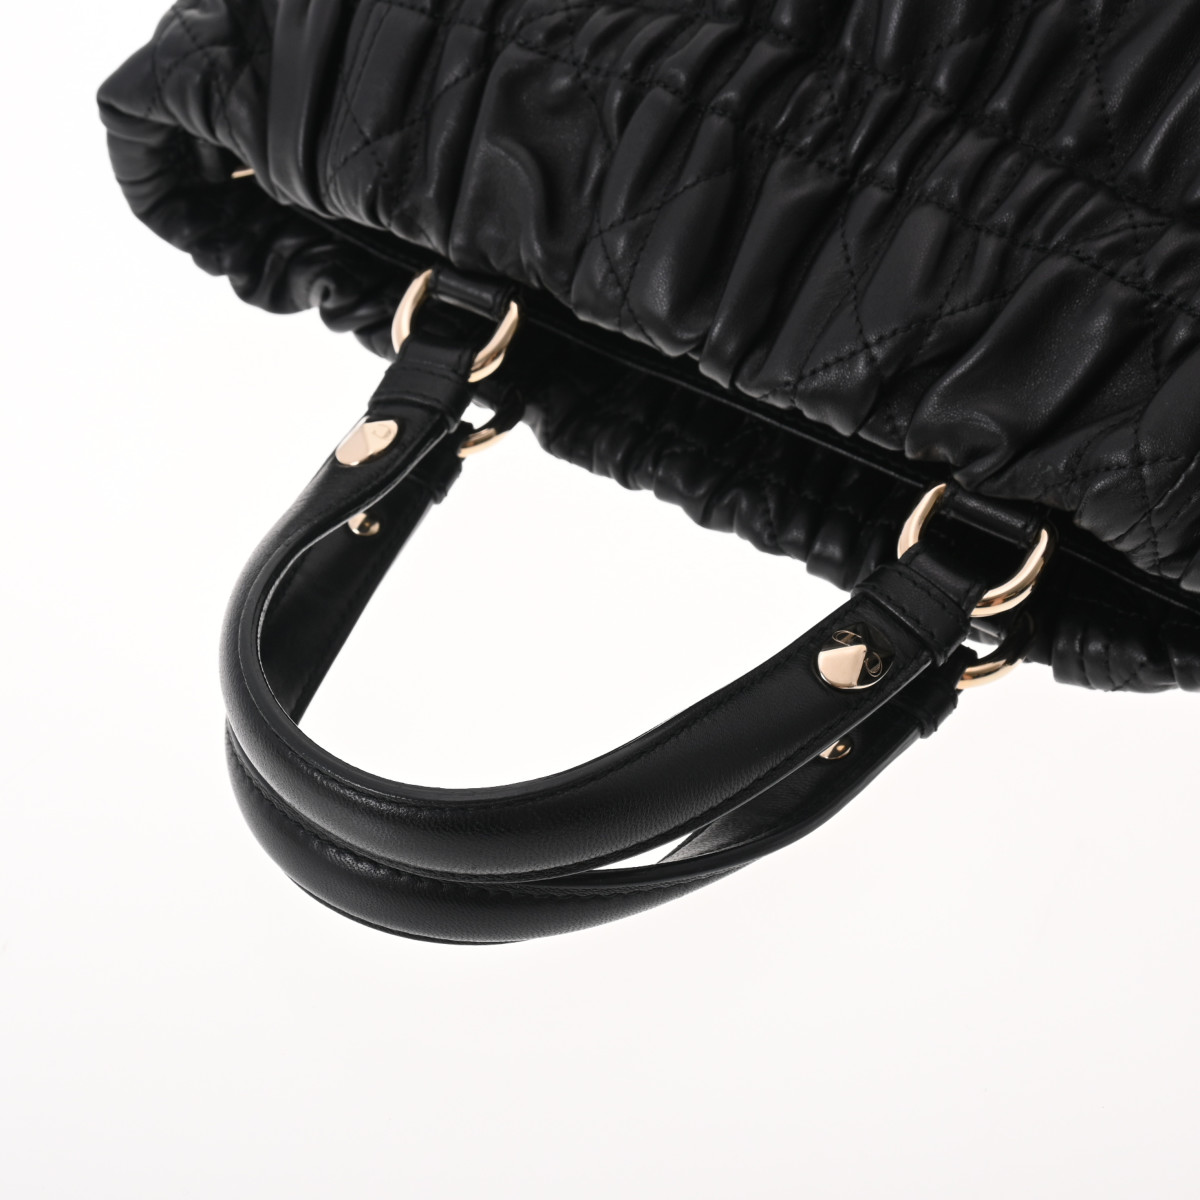 ディオール / Dior ハンドバッグ ブラック/ゴールド金具 M08140LCW レザー レディース バッグ 【中古】【bag】